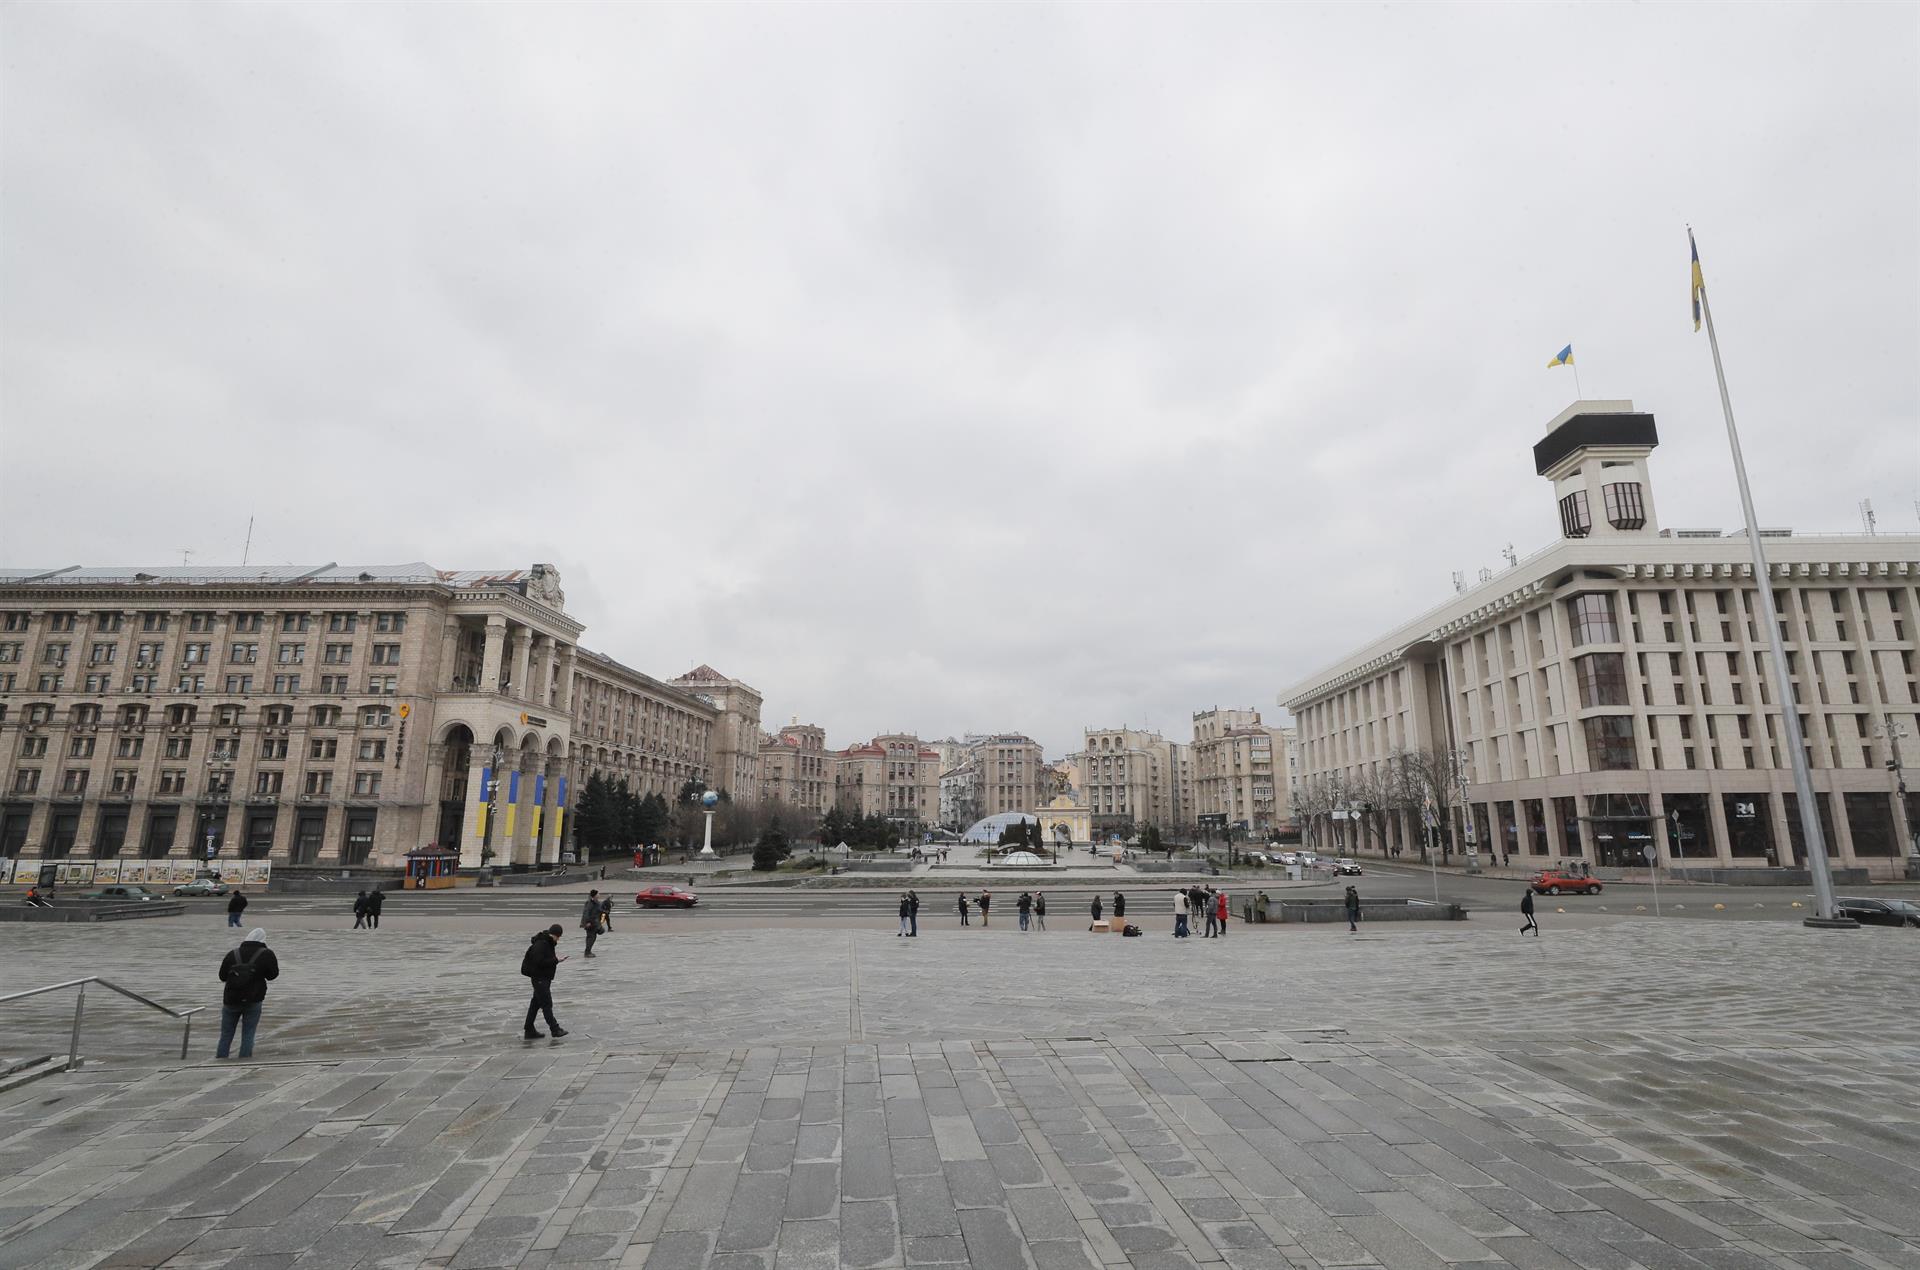 Centro de Kiev, capital de Ucrania. La ciudad bajo asedio de tropas rusa. Foto: SERGEY DOLZHENKO / EFE